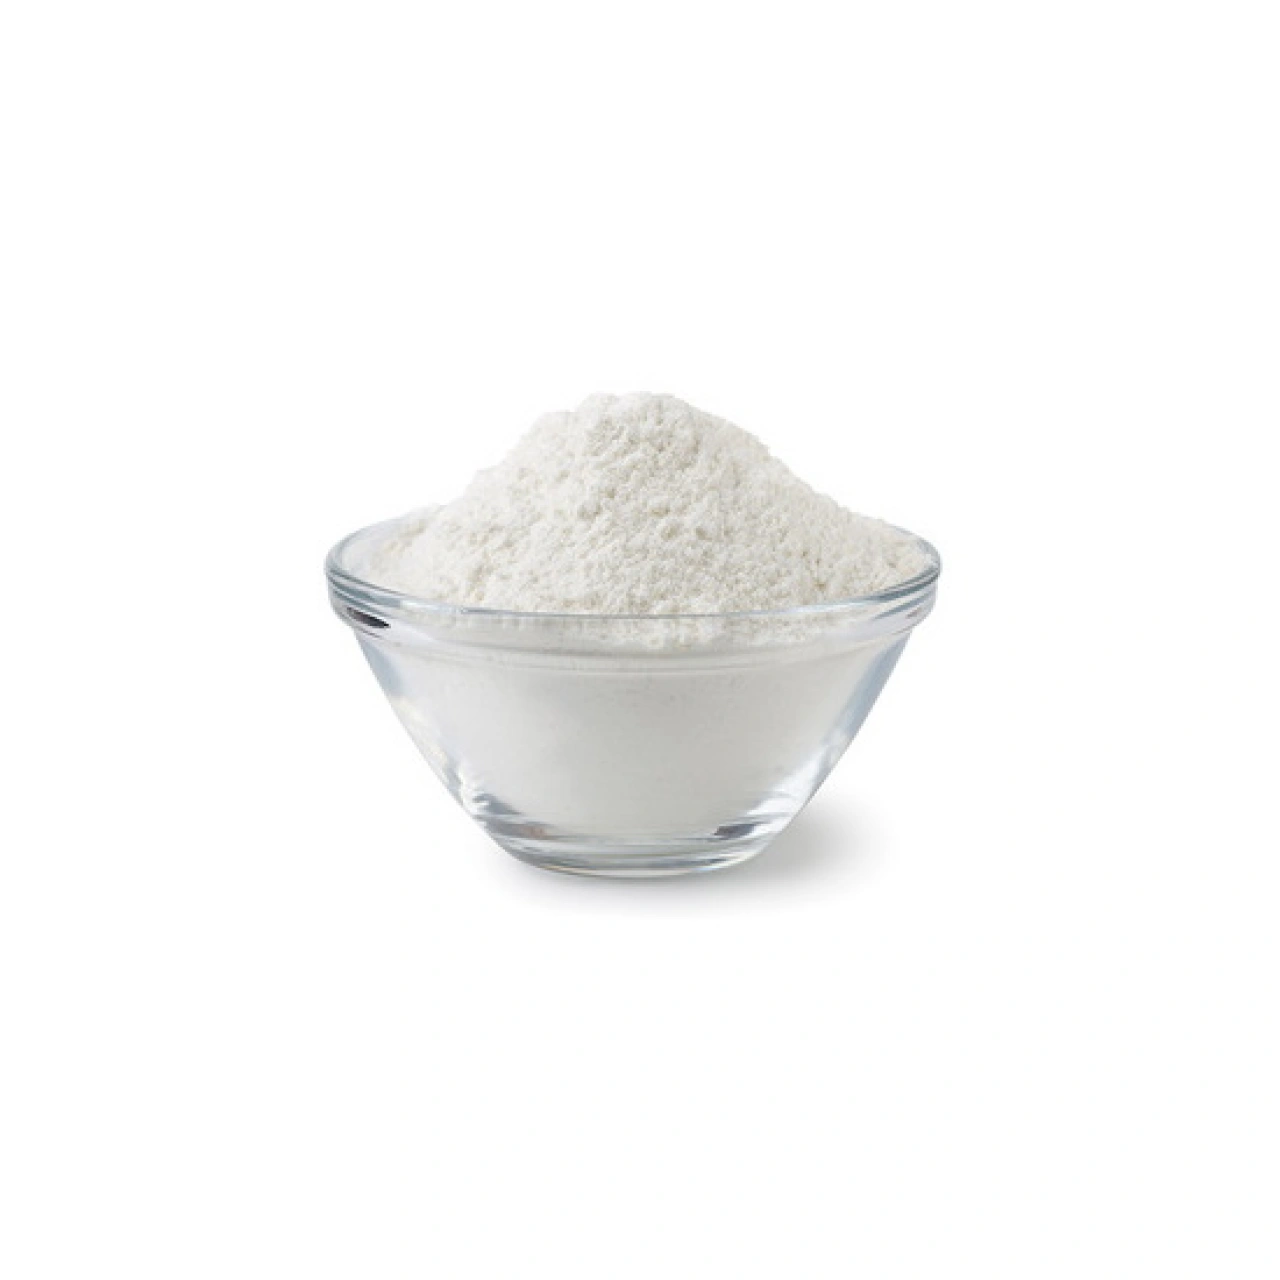 Βόρακας (σκόνη) - HerbStore - Βότανα, Φυτικά προϊόντα υγείας